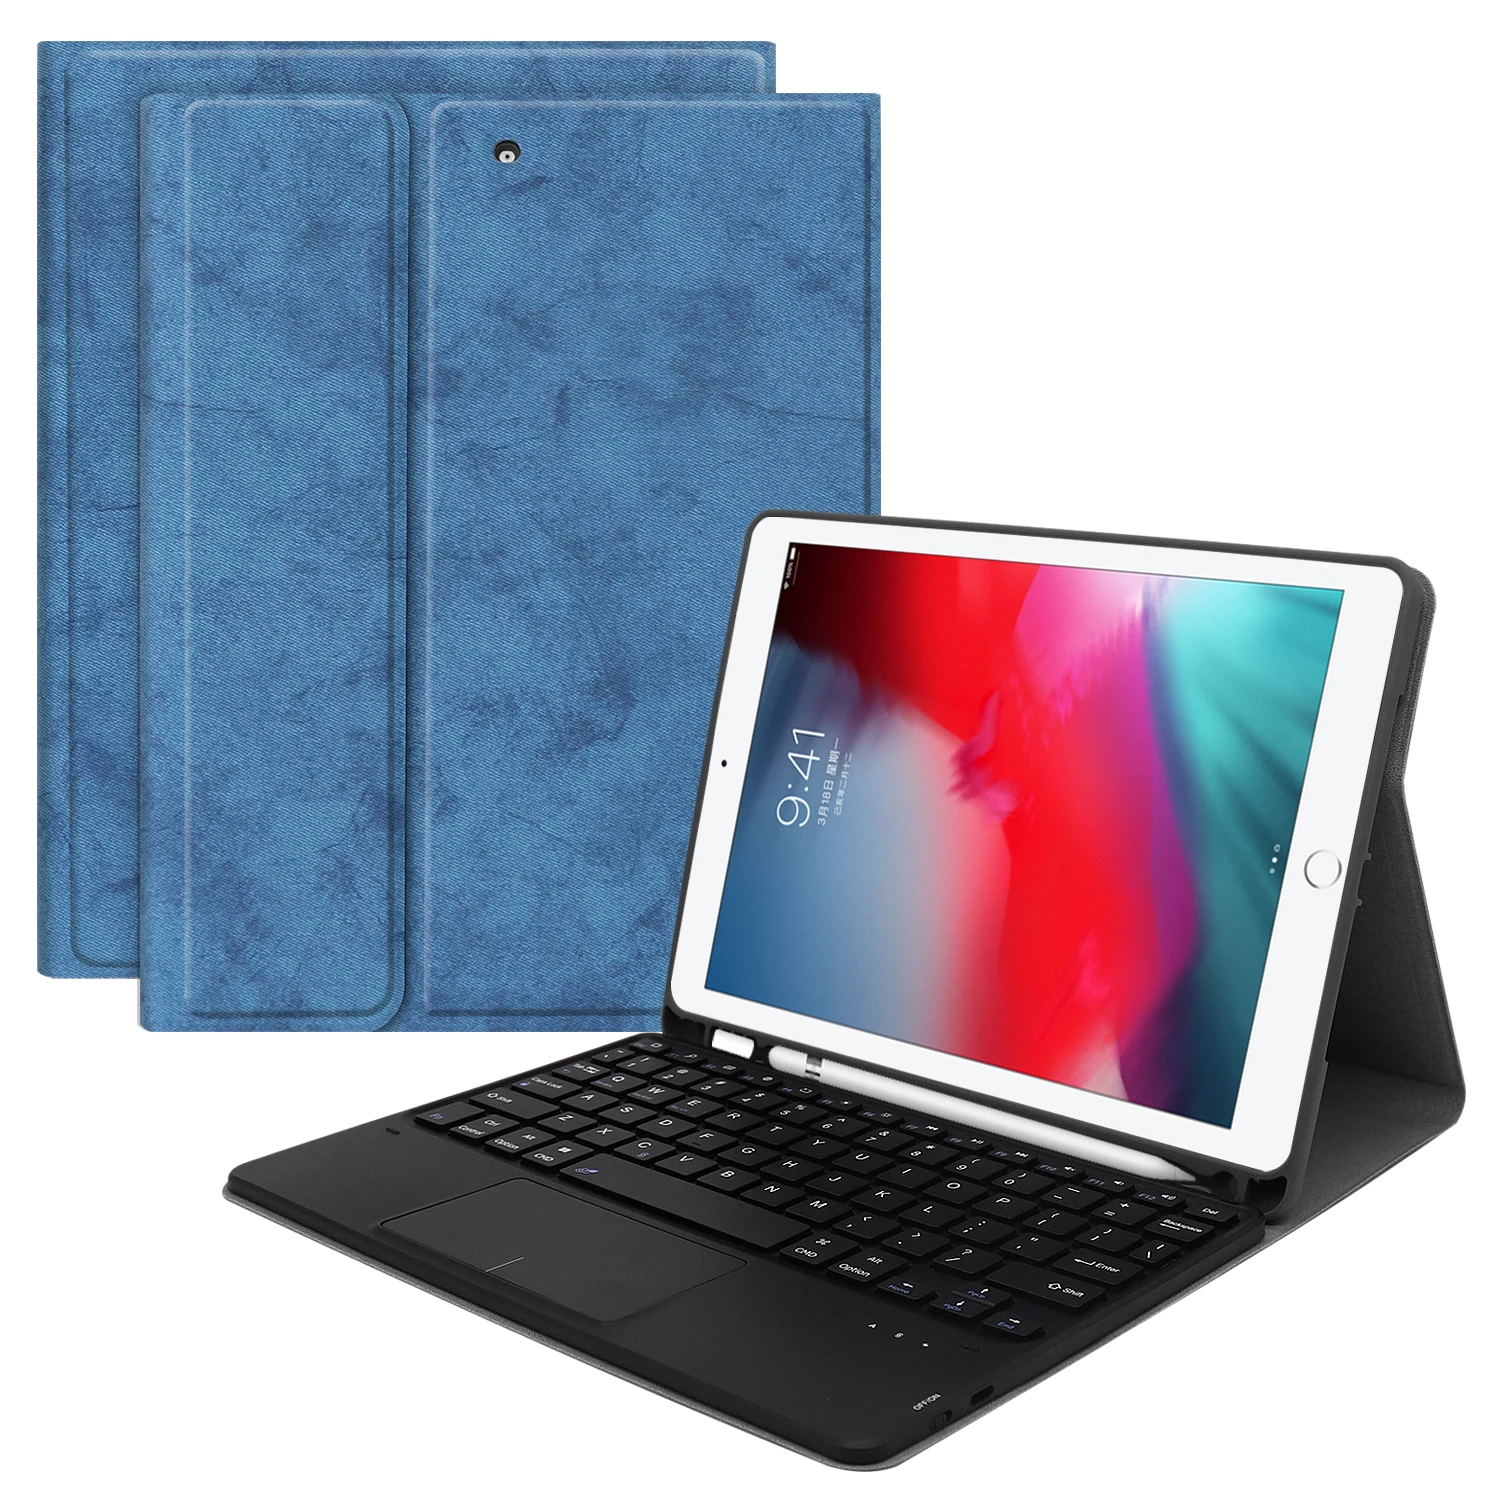 Тачпад клавиатура чехол для iPad mini 5 7,9 6th 9,7 Pro 11 Air 3 10,5 Чехол коврик для мыши и клавиатуры для iPad 7th 10,2 клавиатура